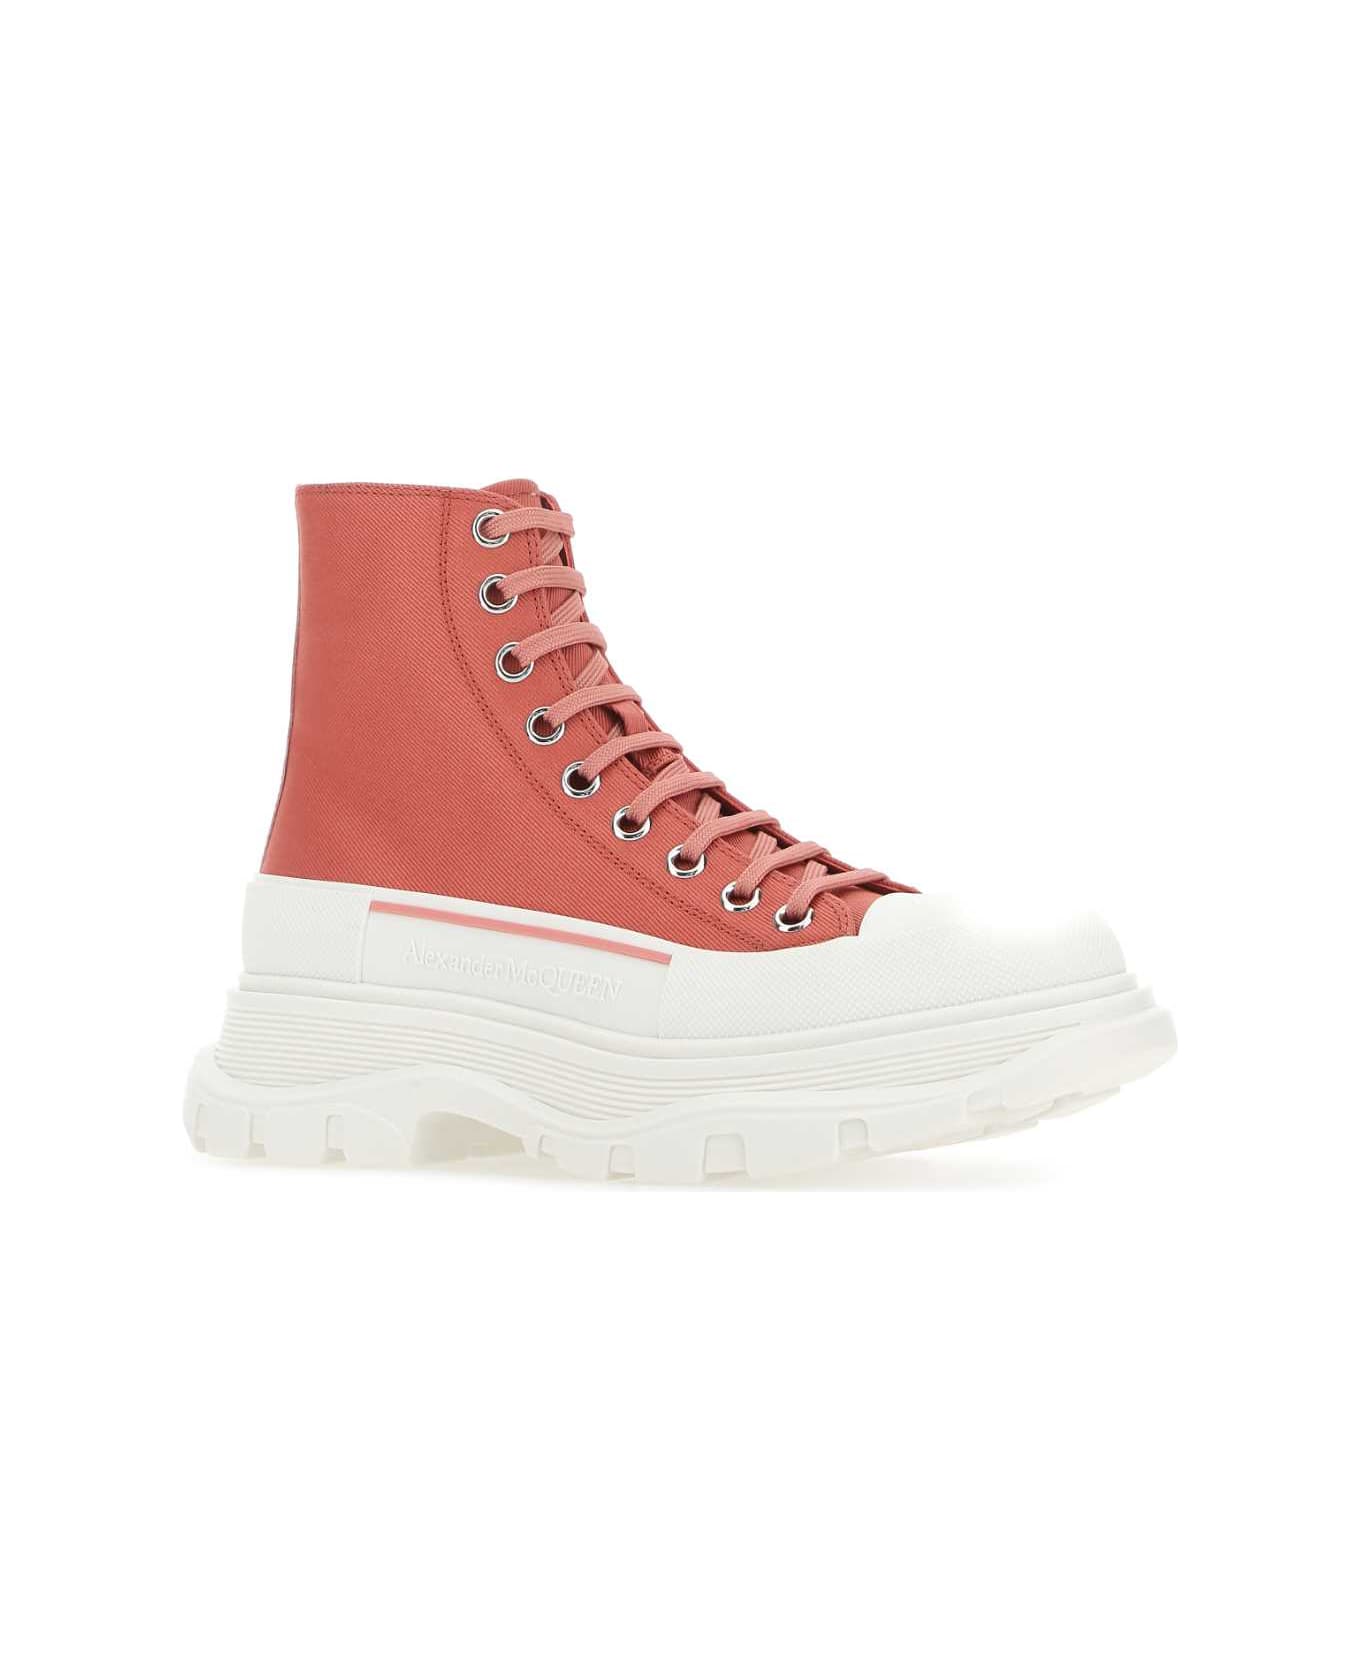 Alexander McQueen Pastel Pink Leather Tread Slick Sneakers - 5542